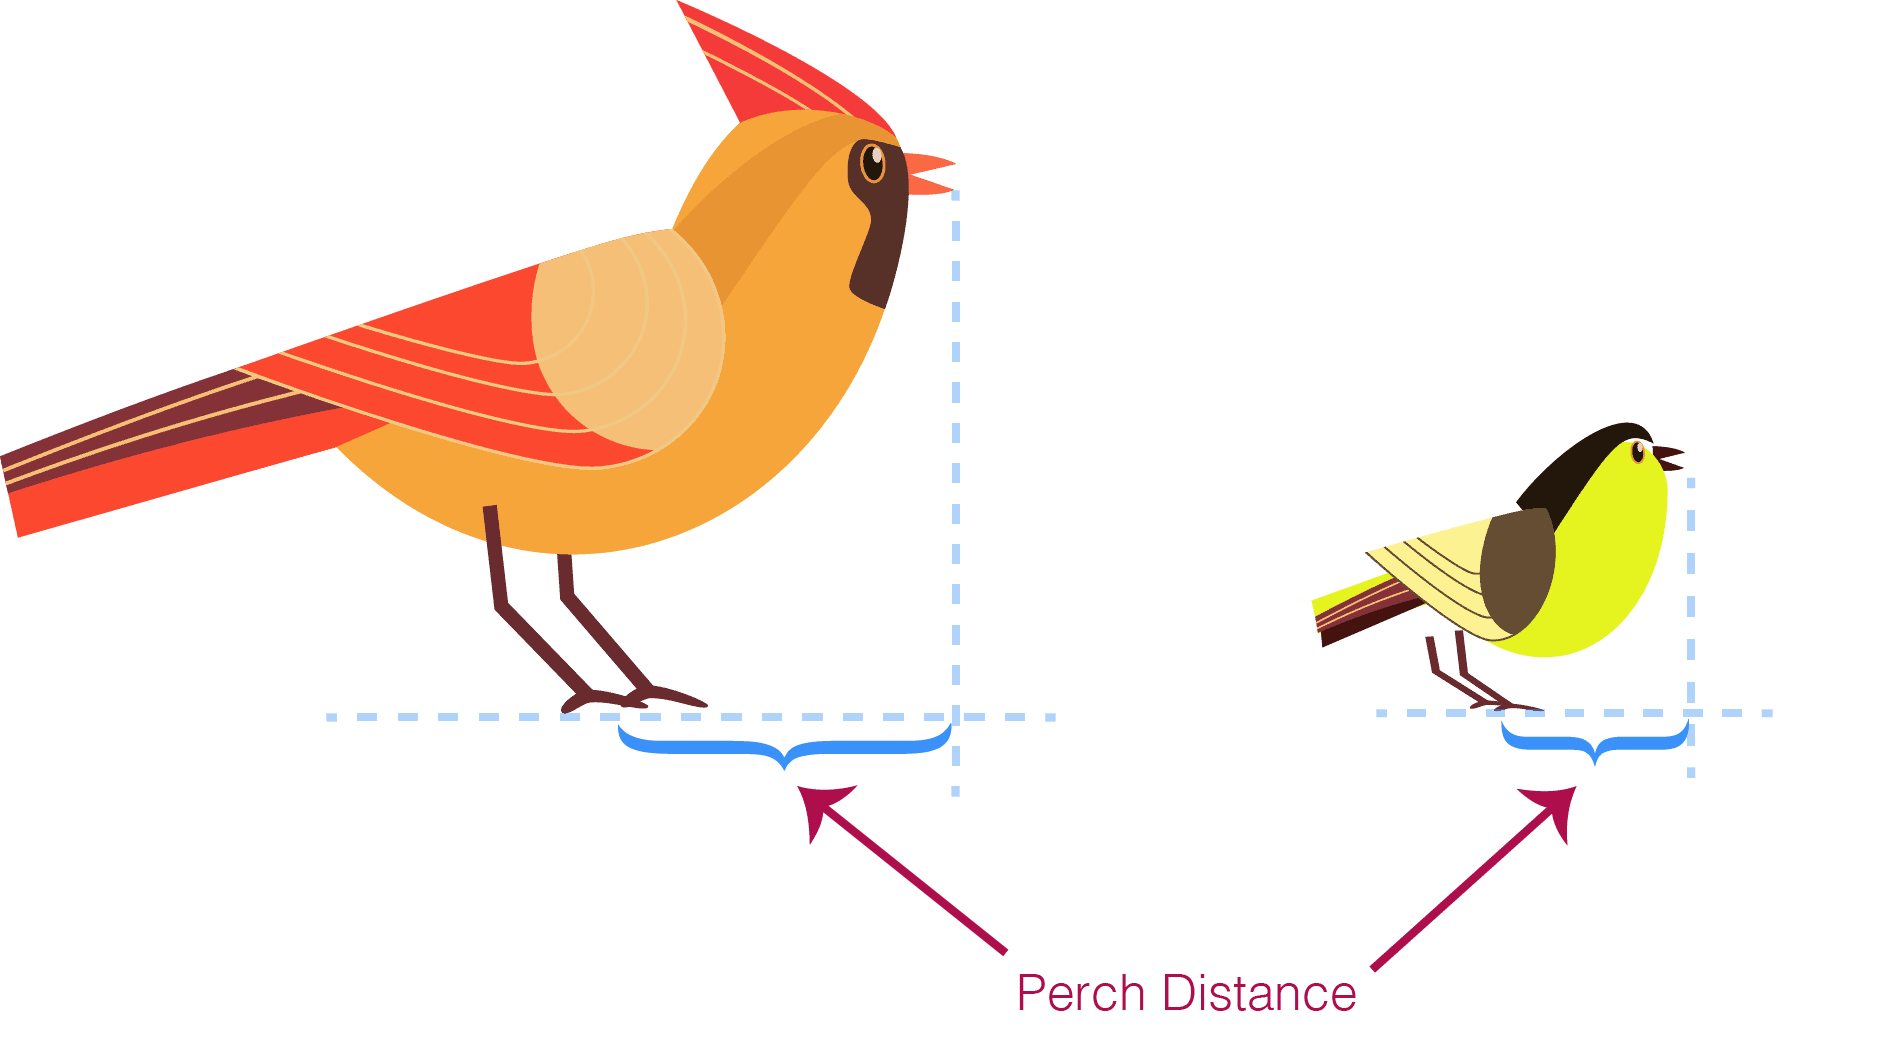 ilustración de cardenal y carbonero que muestra la distancia de percha para cada uno